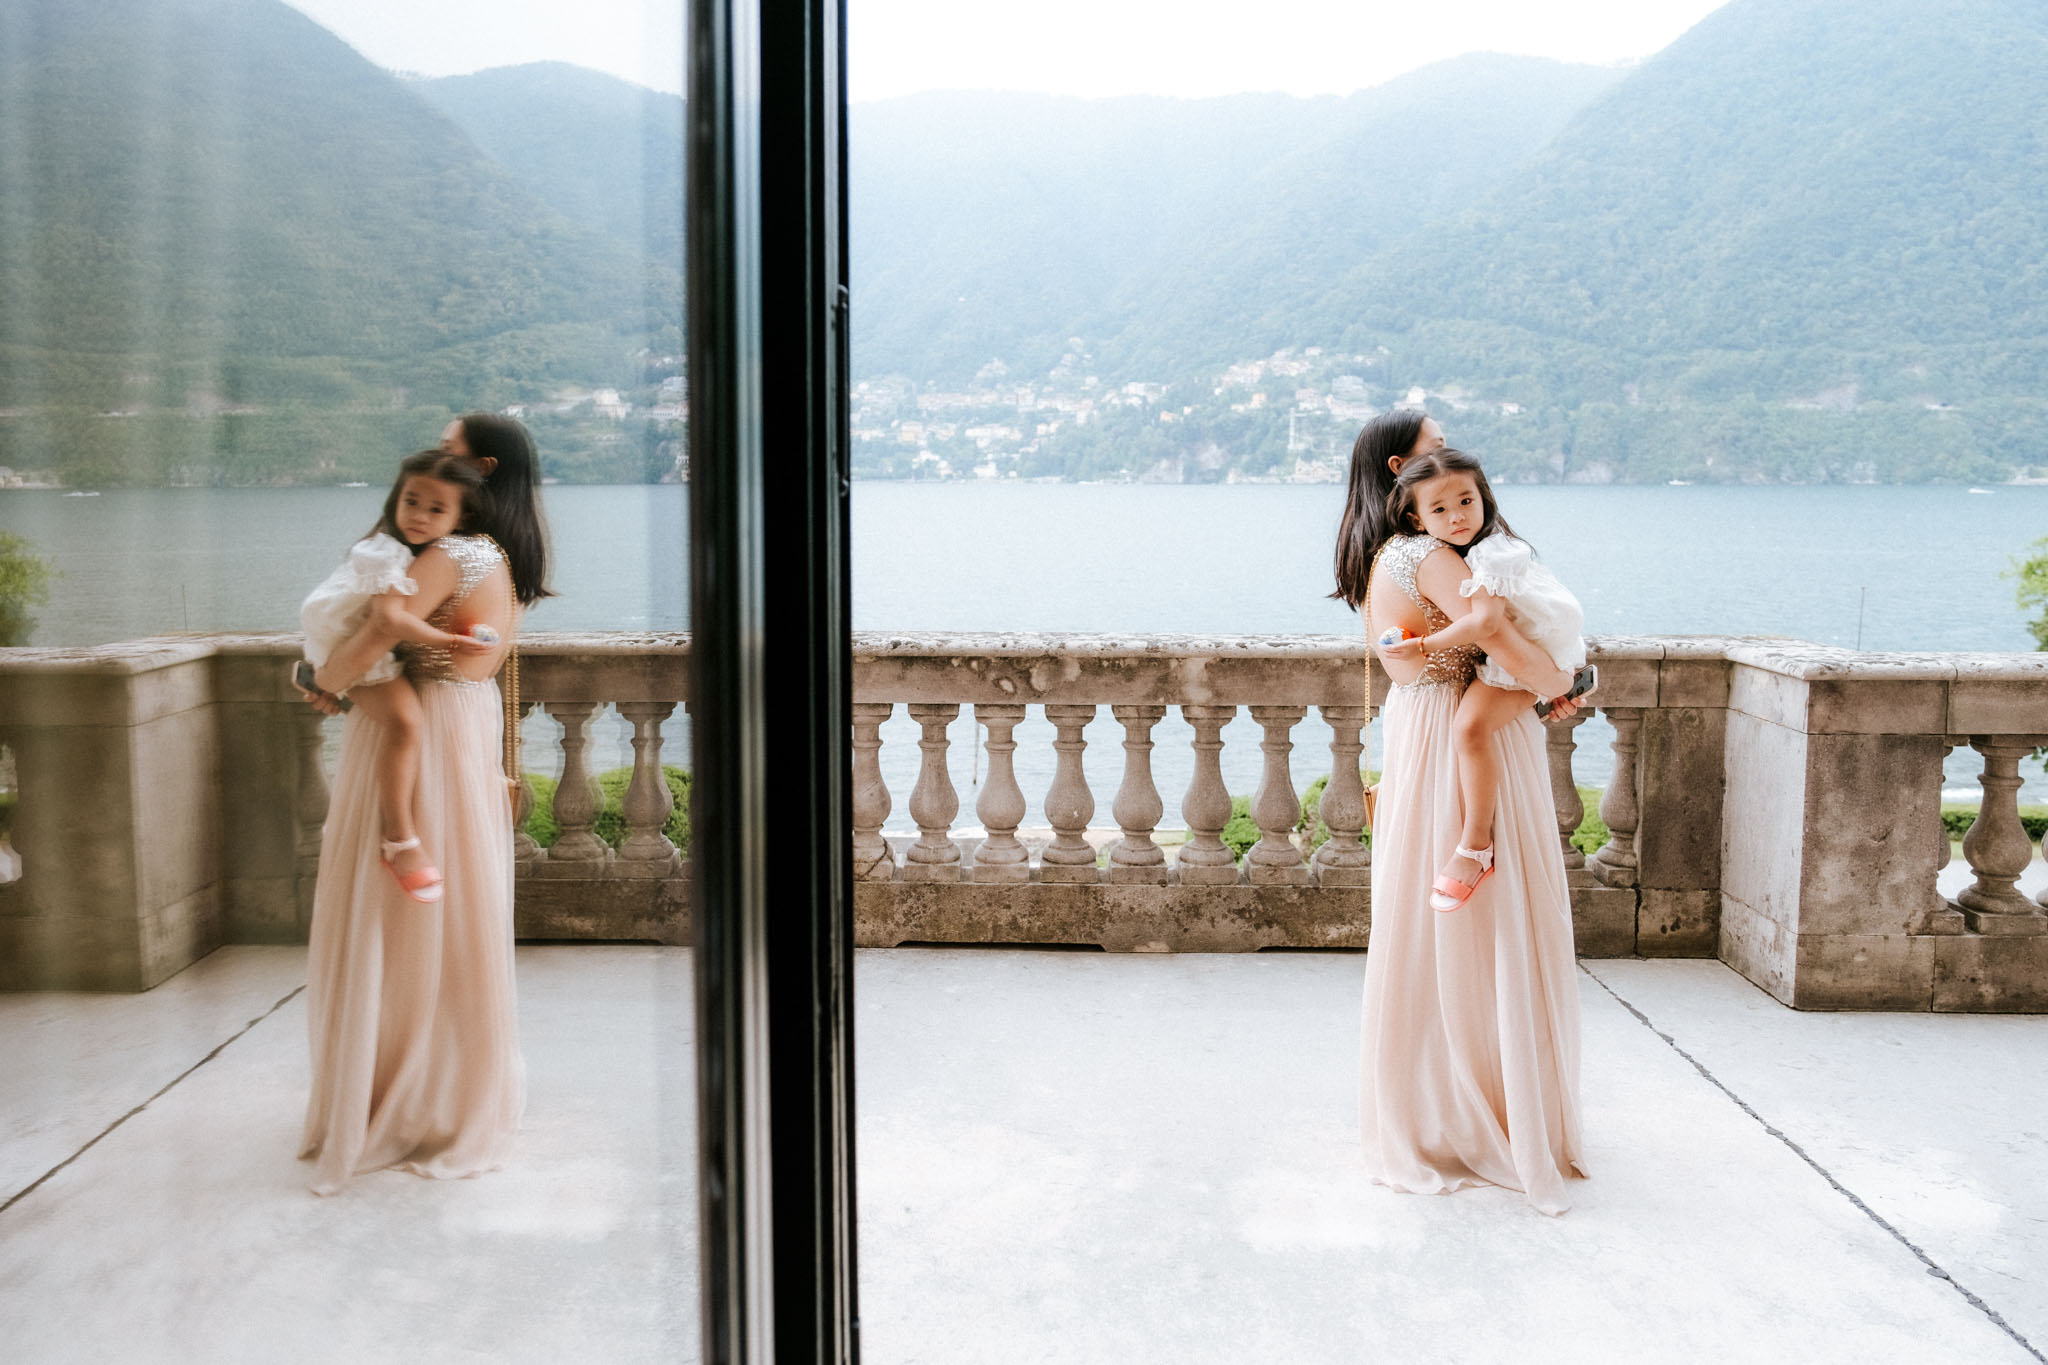 Villa Erba Lake Como Wedding Photographer